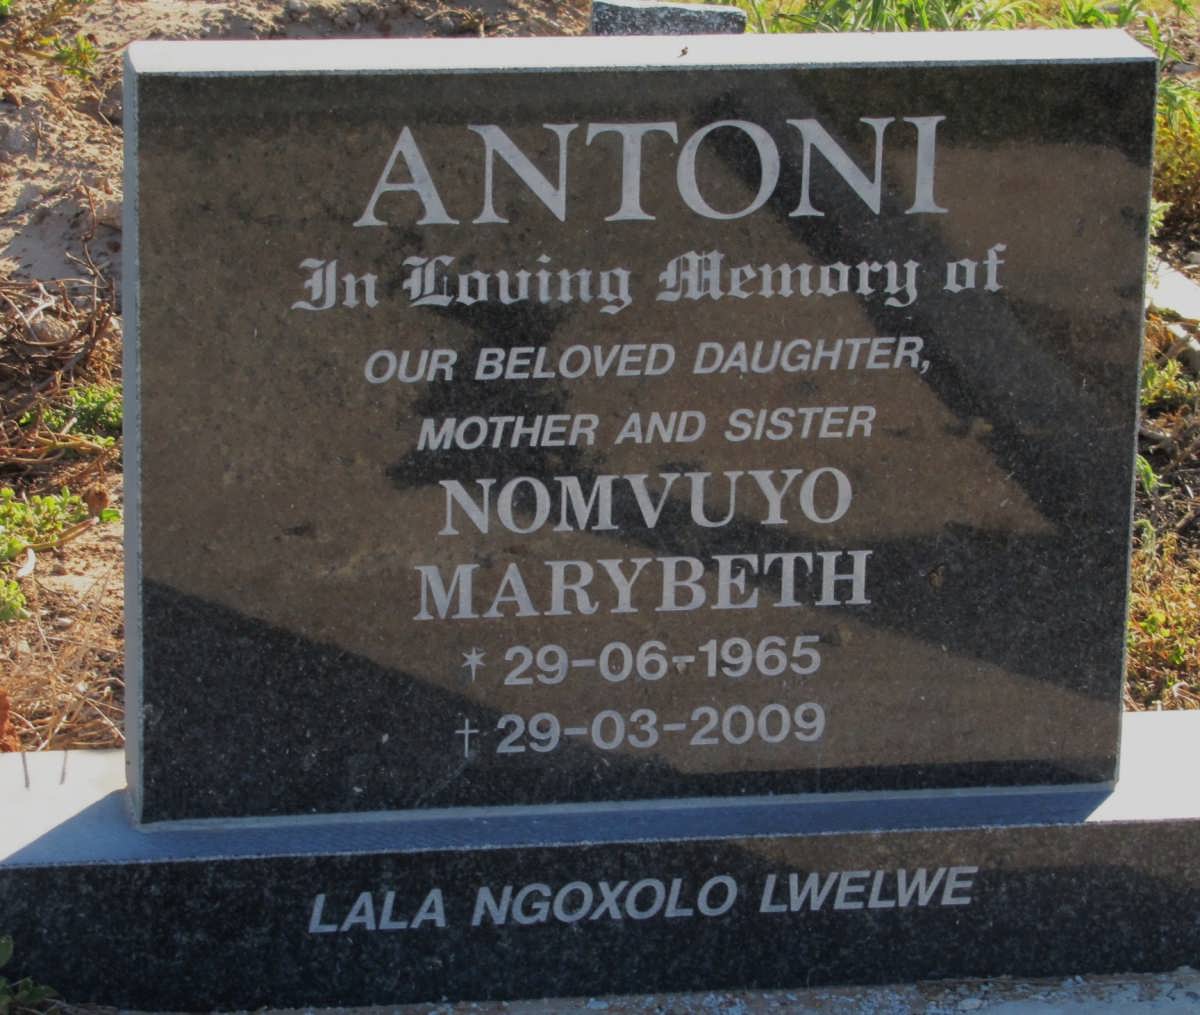 ANTONI Nomvuyo Marybeth 1965-2009